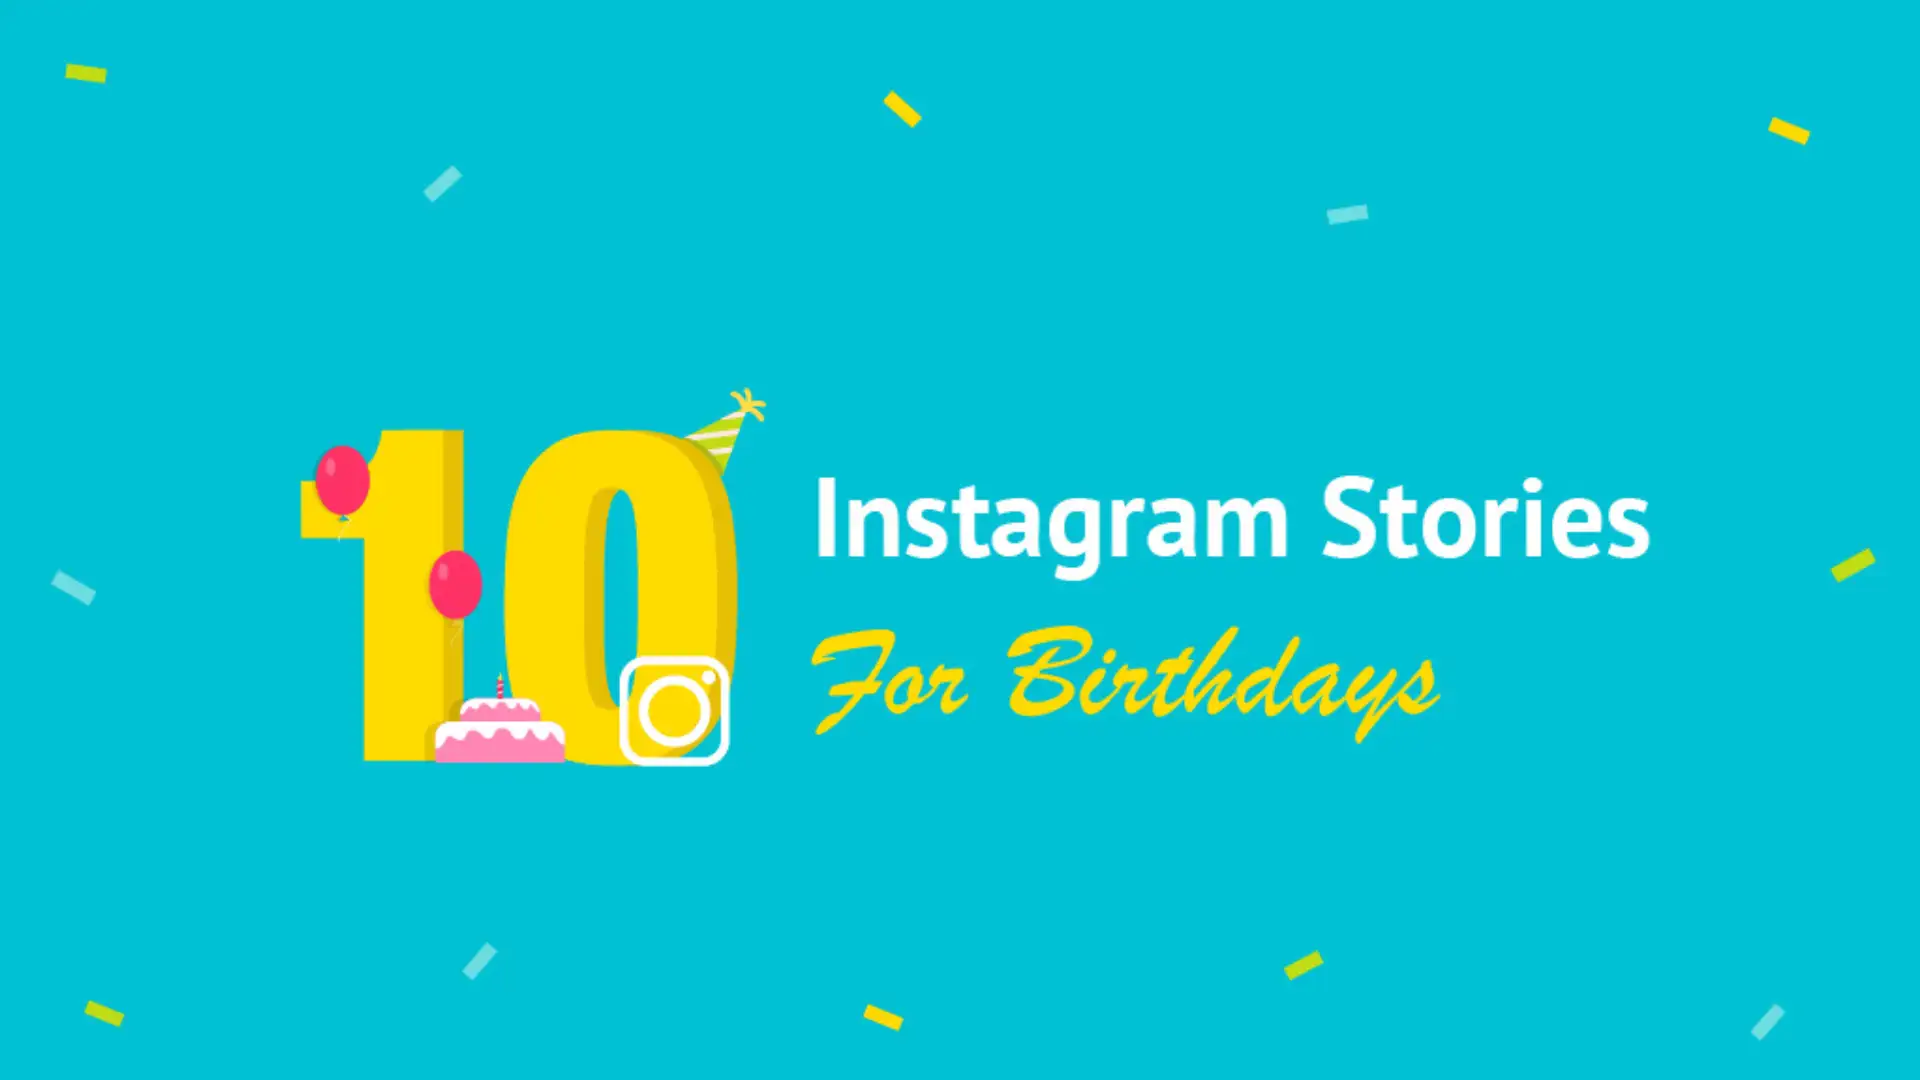 Bạn đang tìm kiếm ý tưởng tuyệt vời cho Instagram story sinh nhật của mình? Hãy xem qua các hình ảnh liên quan để tìm ra một loạt các ý tưởng sáng tạo. Với những ý tưởng này, bạn có thể tạo ra một story sinh nhật độc đáo để chúc mừng người thân của mình.